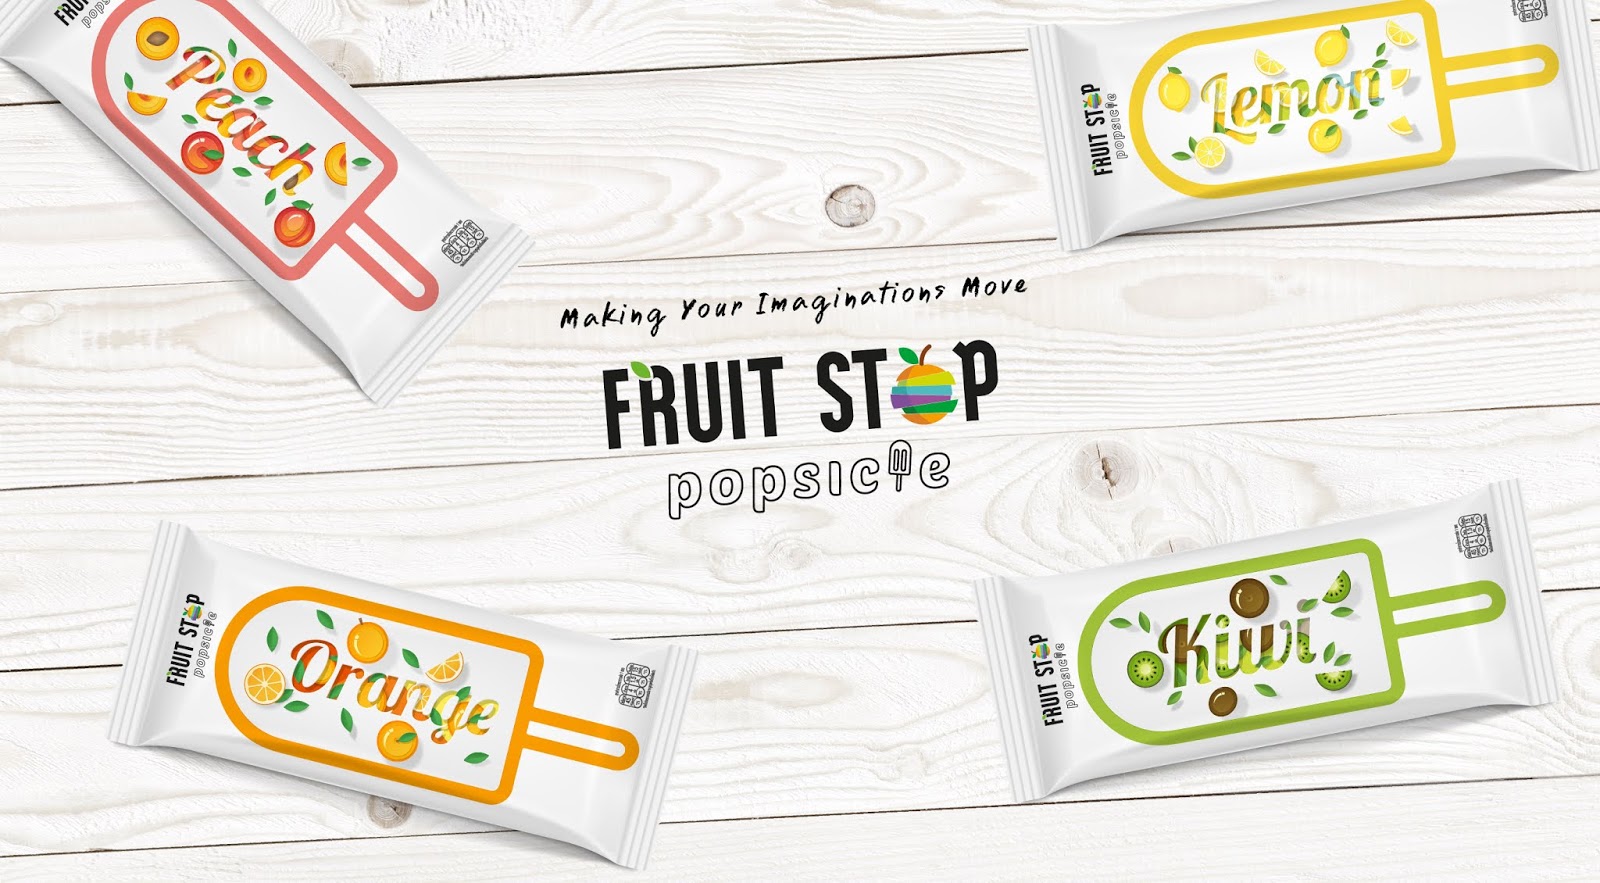 清新口味的Fruit Stop冰棒包装设计